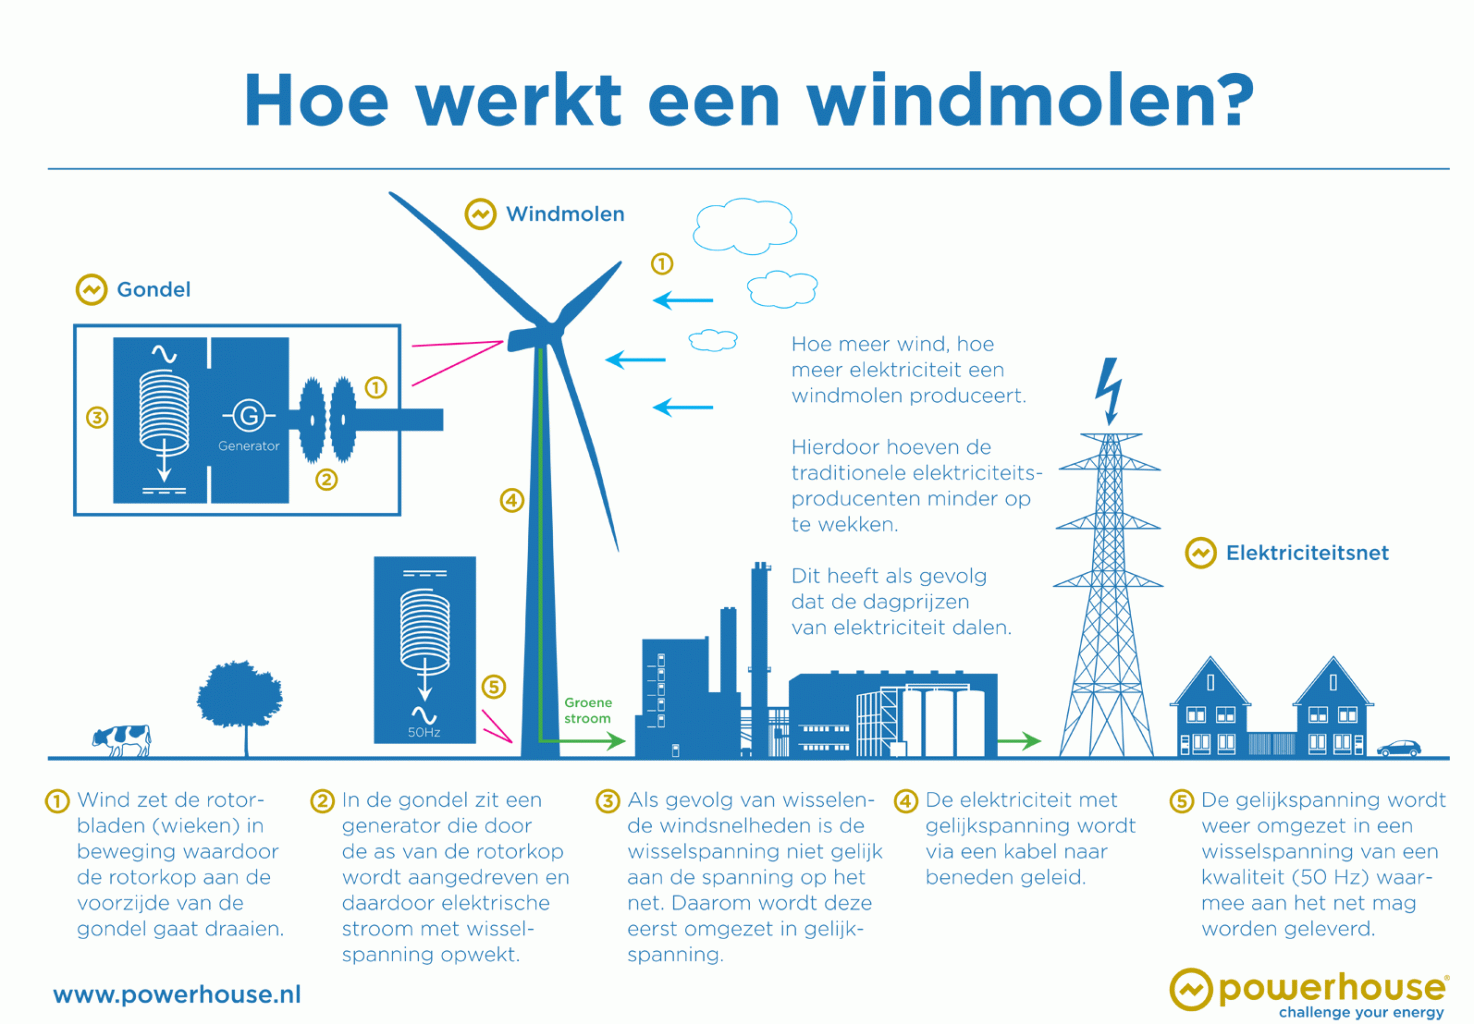 Hoe werkt een windmolen